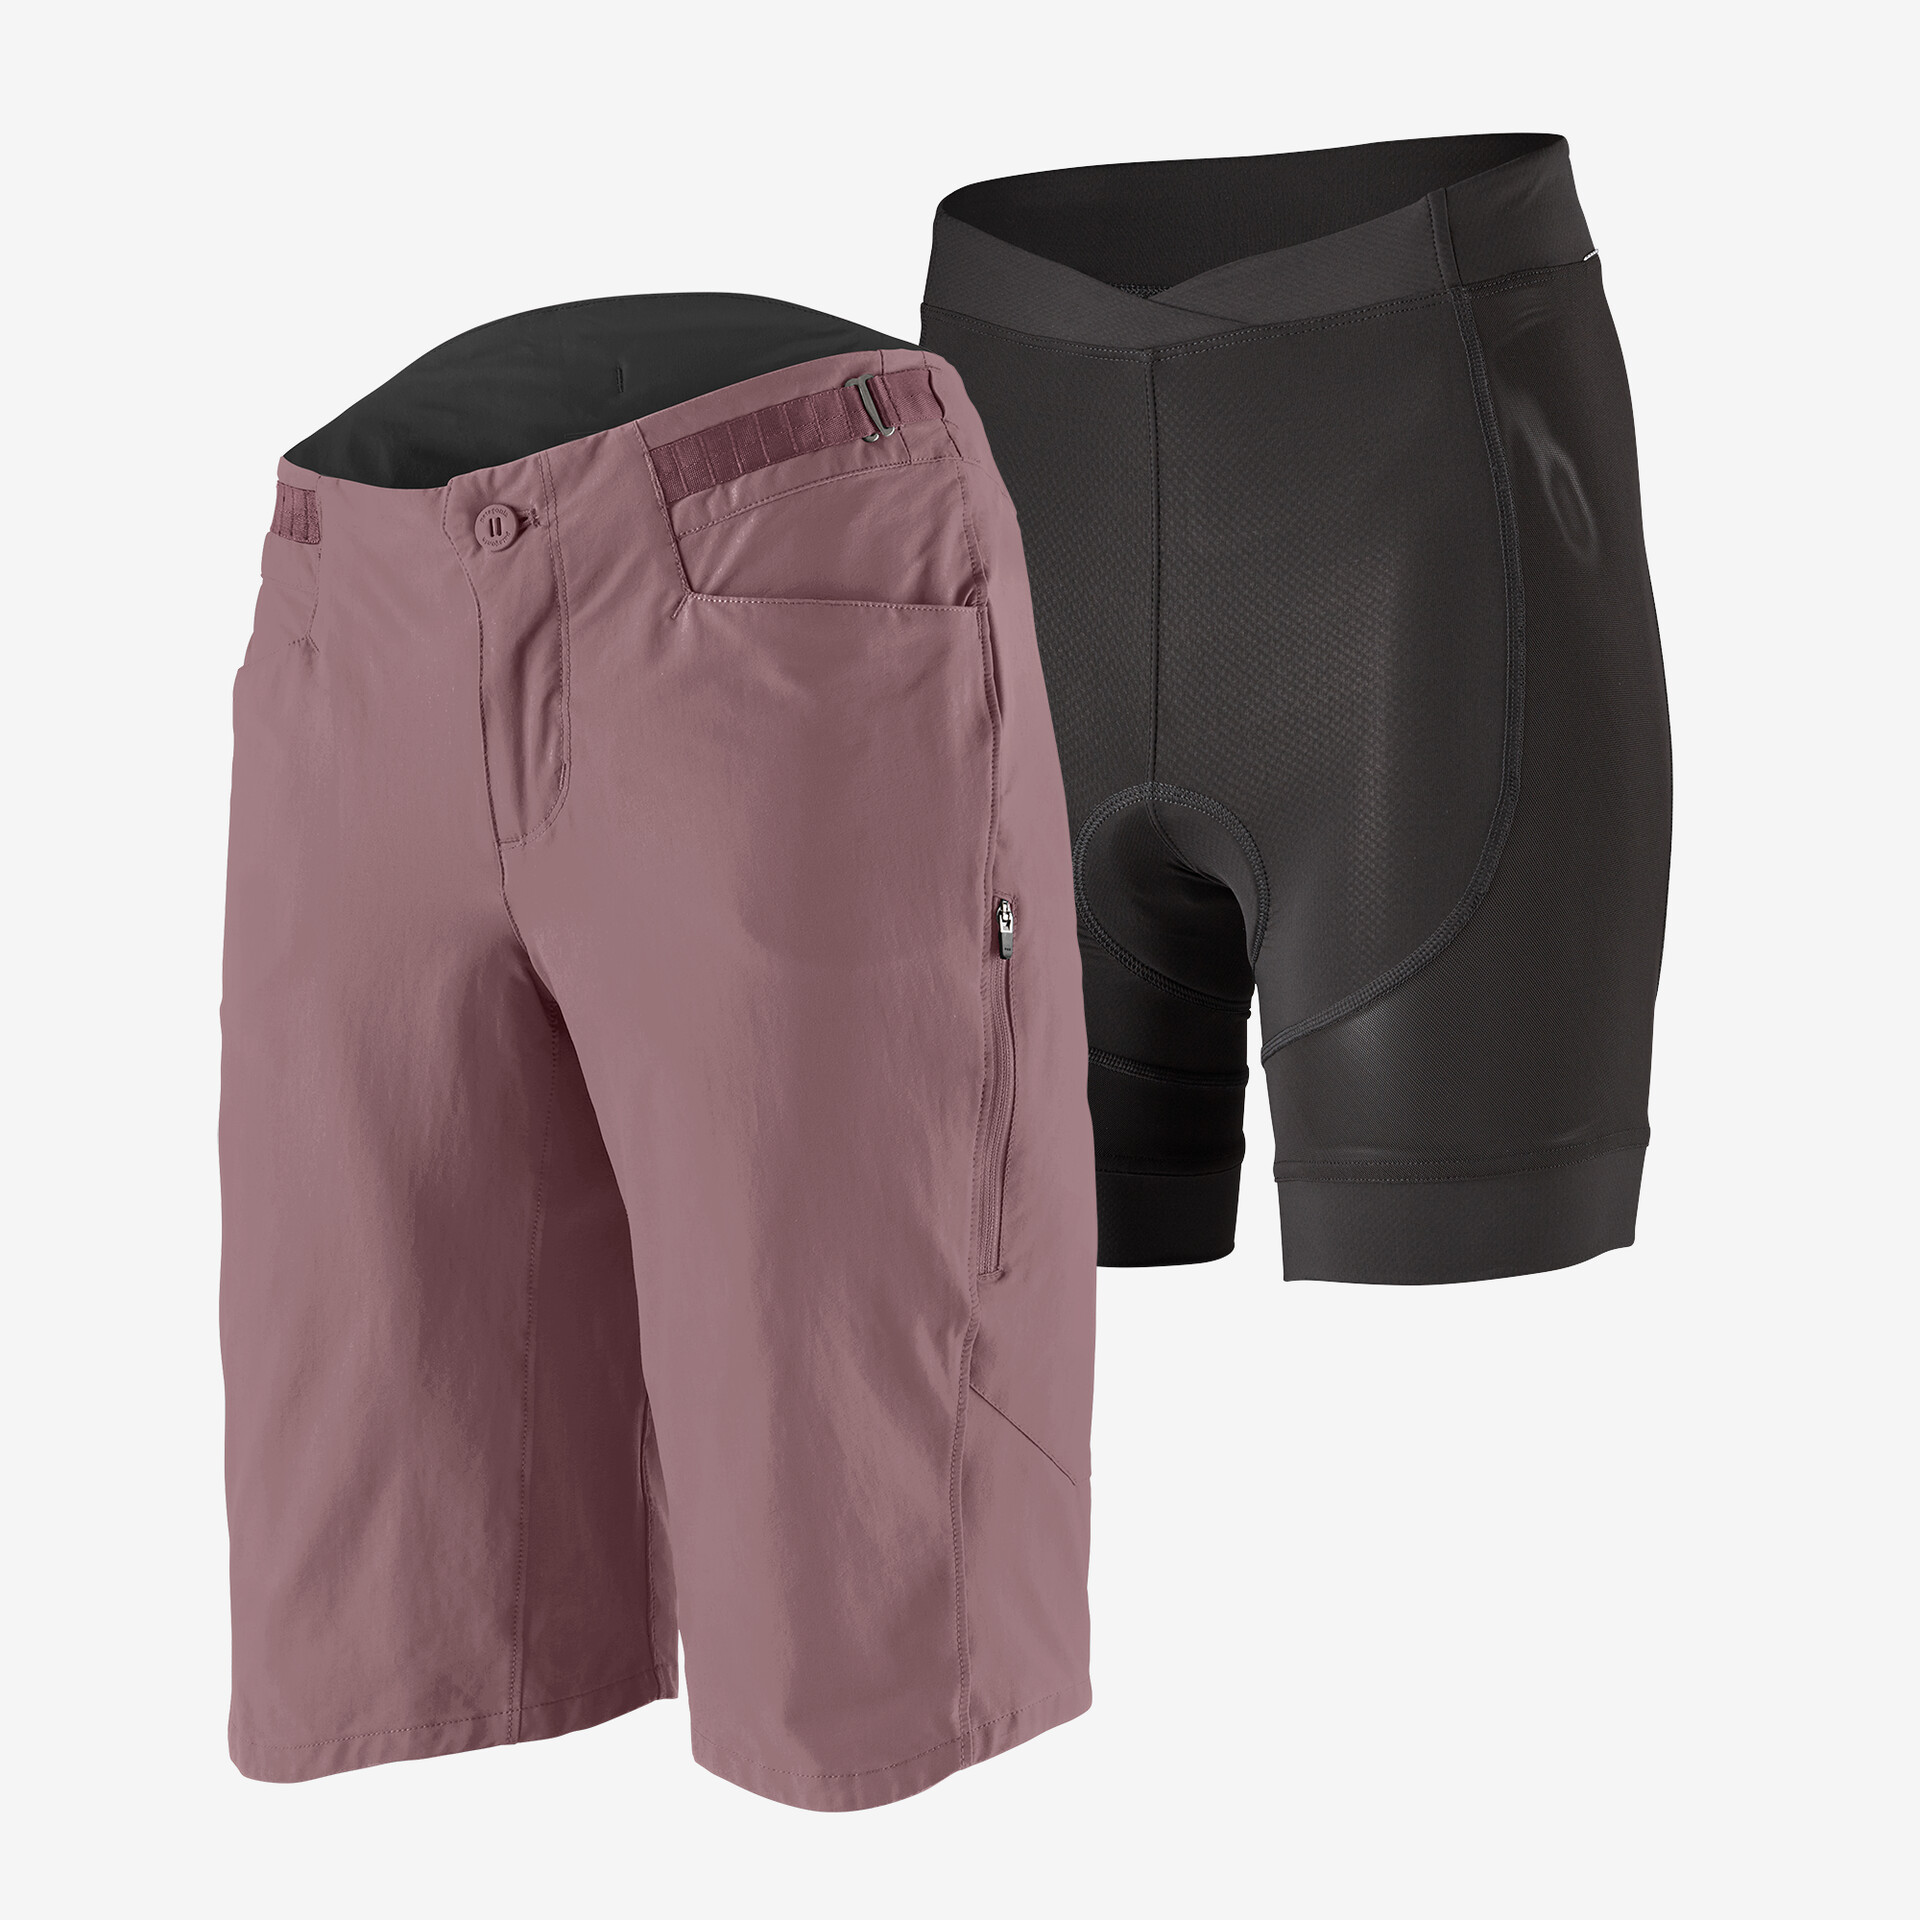 Женские велосипедные шорты для грязи, 12 дюймов Patagonia, цвет Evening Mauve шорты велосипедные мужские светоотражающие дышащие свободные штаны для горных велосипедов короткие брюки для мотокросса